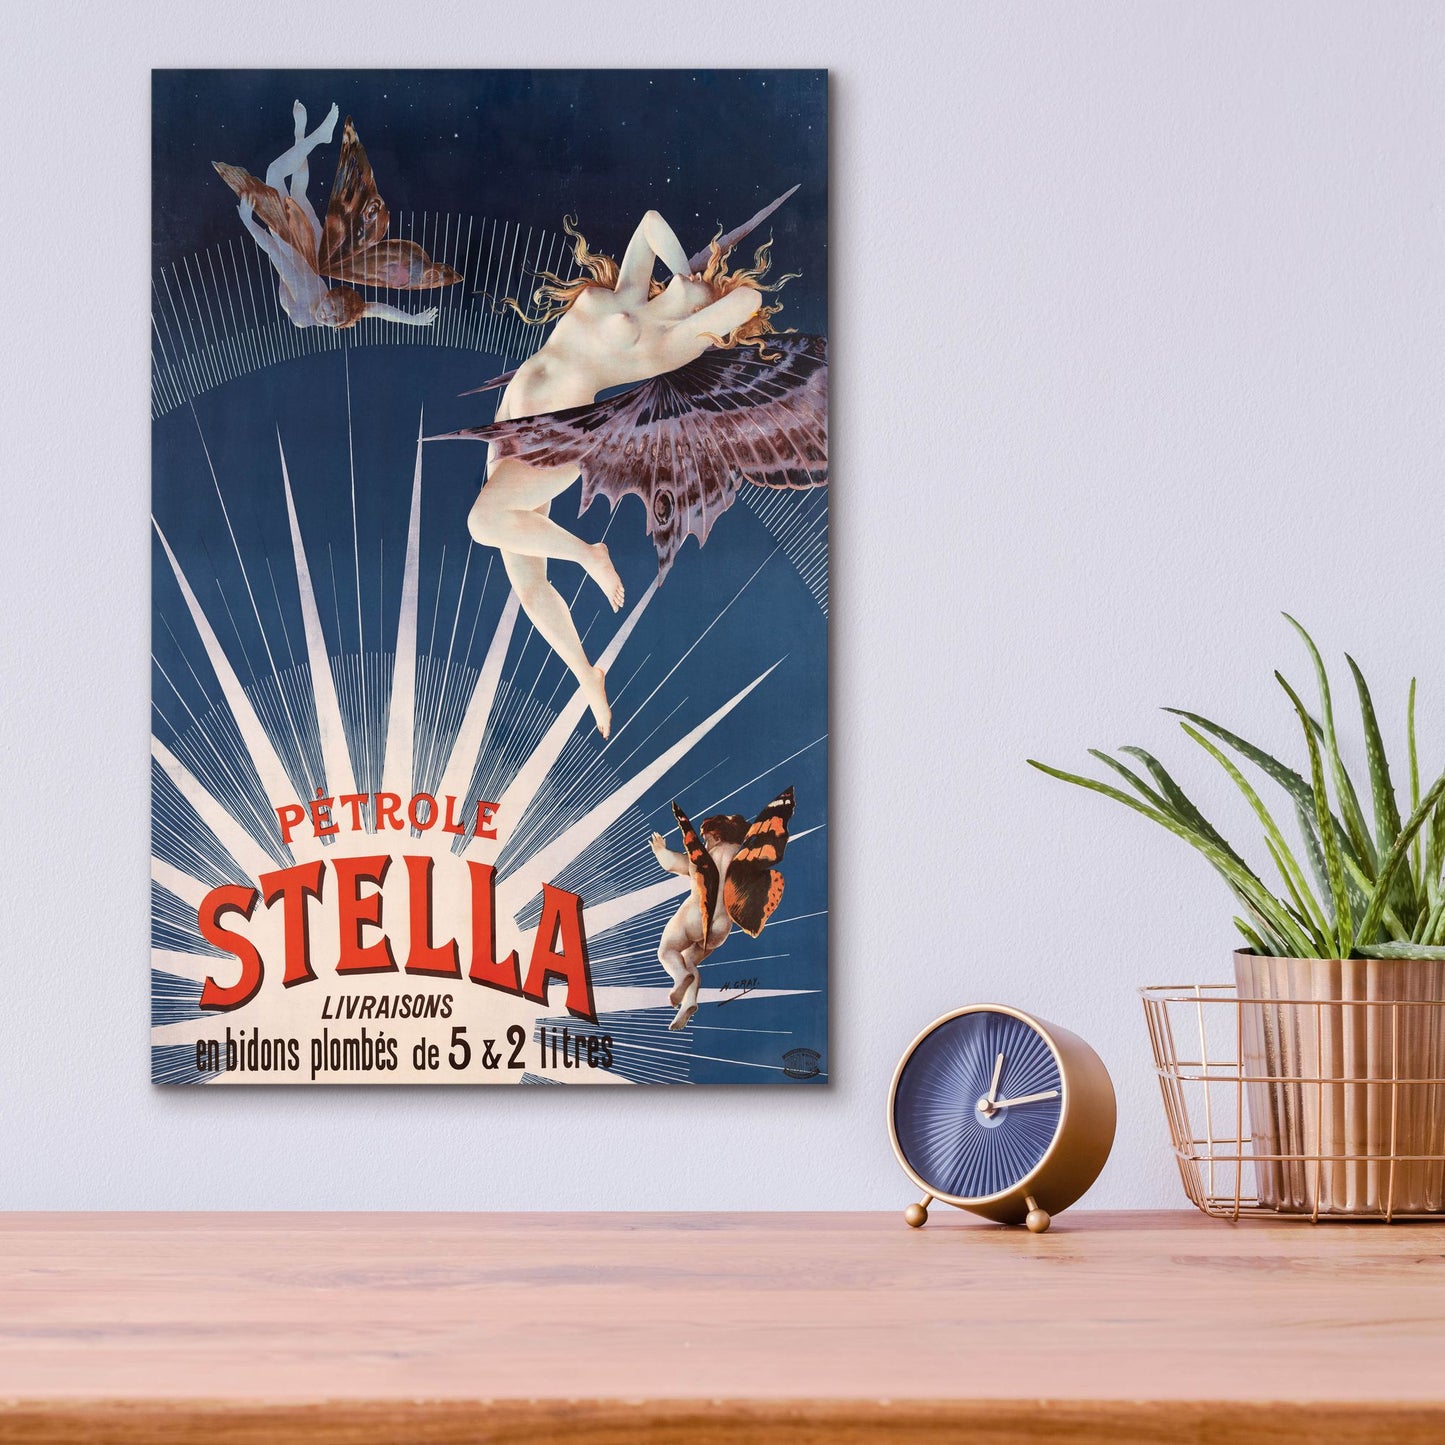 Epic Art 'Petrole Stella' by Gray, Acrylic Glass Wall Art,12x16